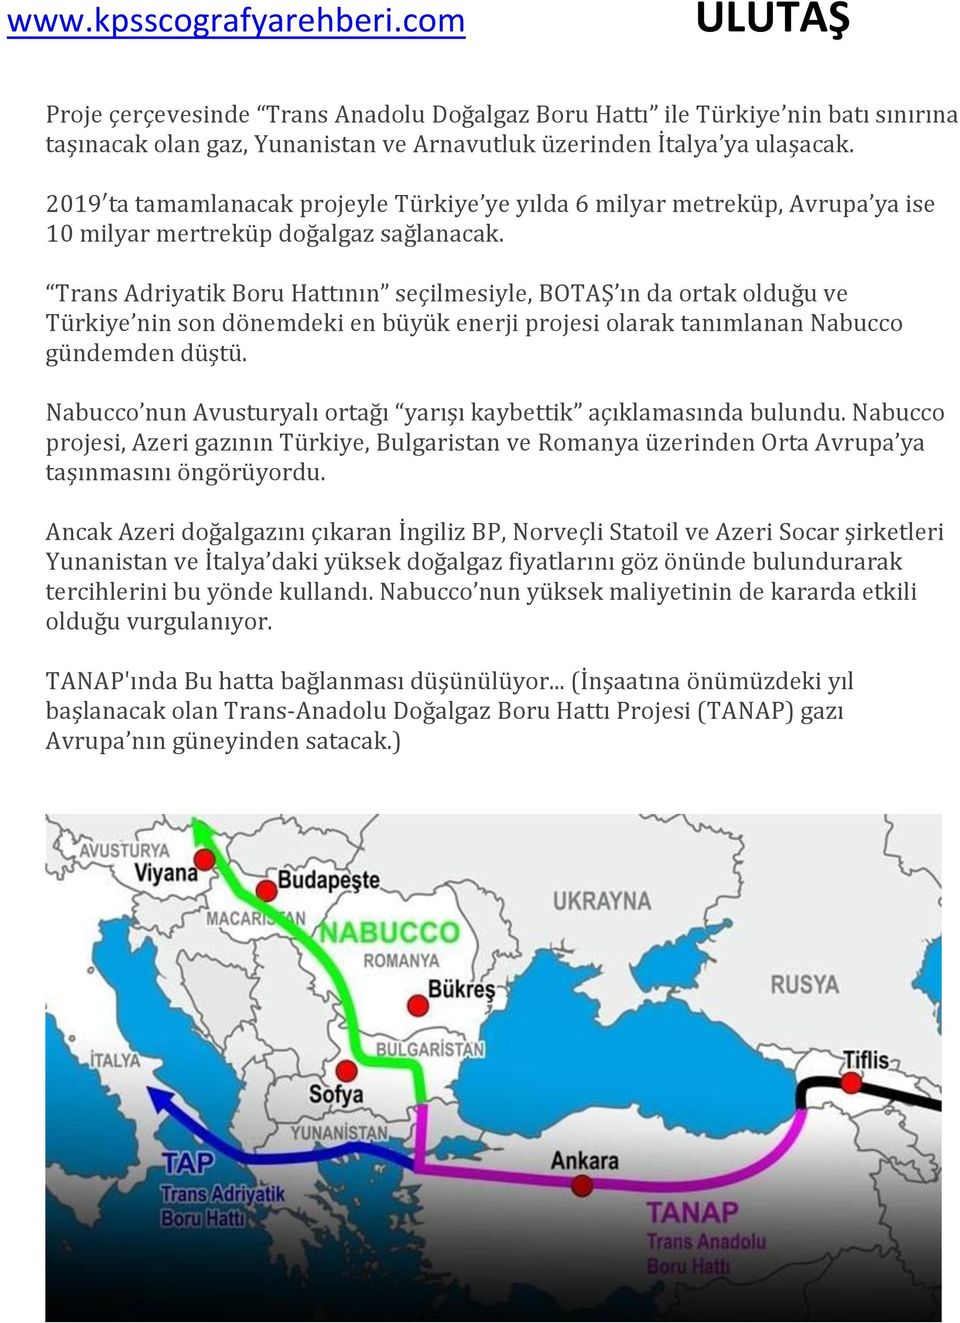 Trans Adriyatik Boru Hattının seçilmesiyle, BOTAŞ ın da ortak olduğu ve Türkiye nin son dönemdeki en büyük enerji projesi olarak tanımlanan Nabucco gündemden düştü.